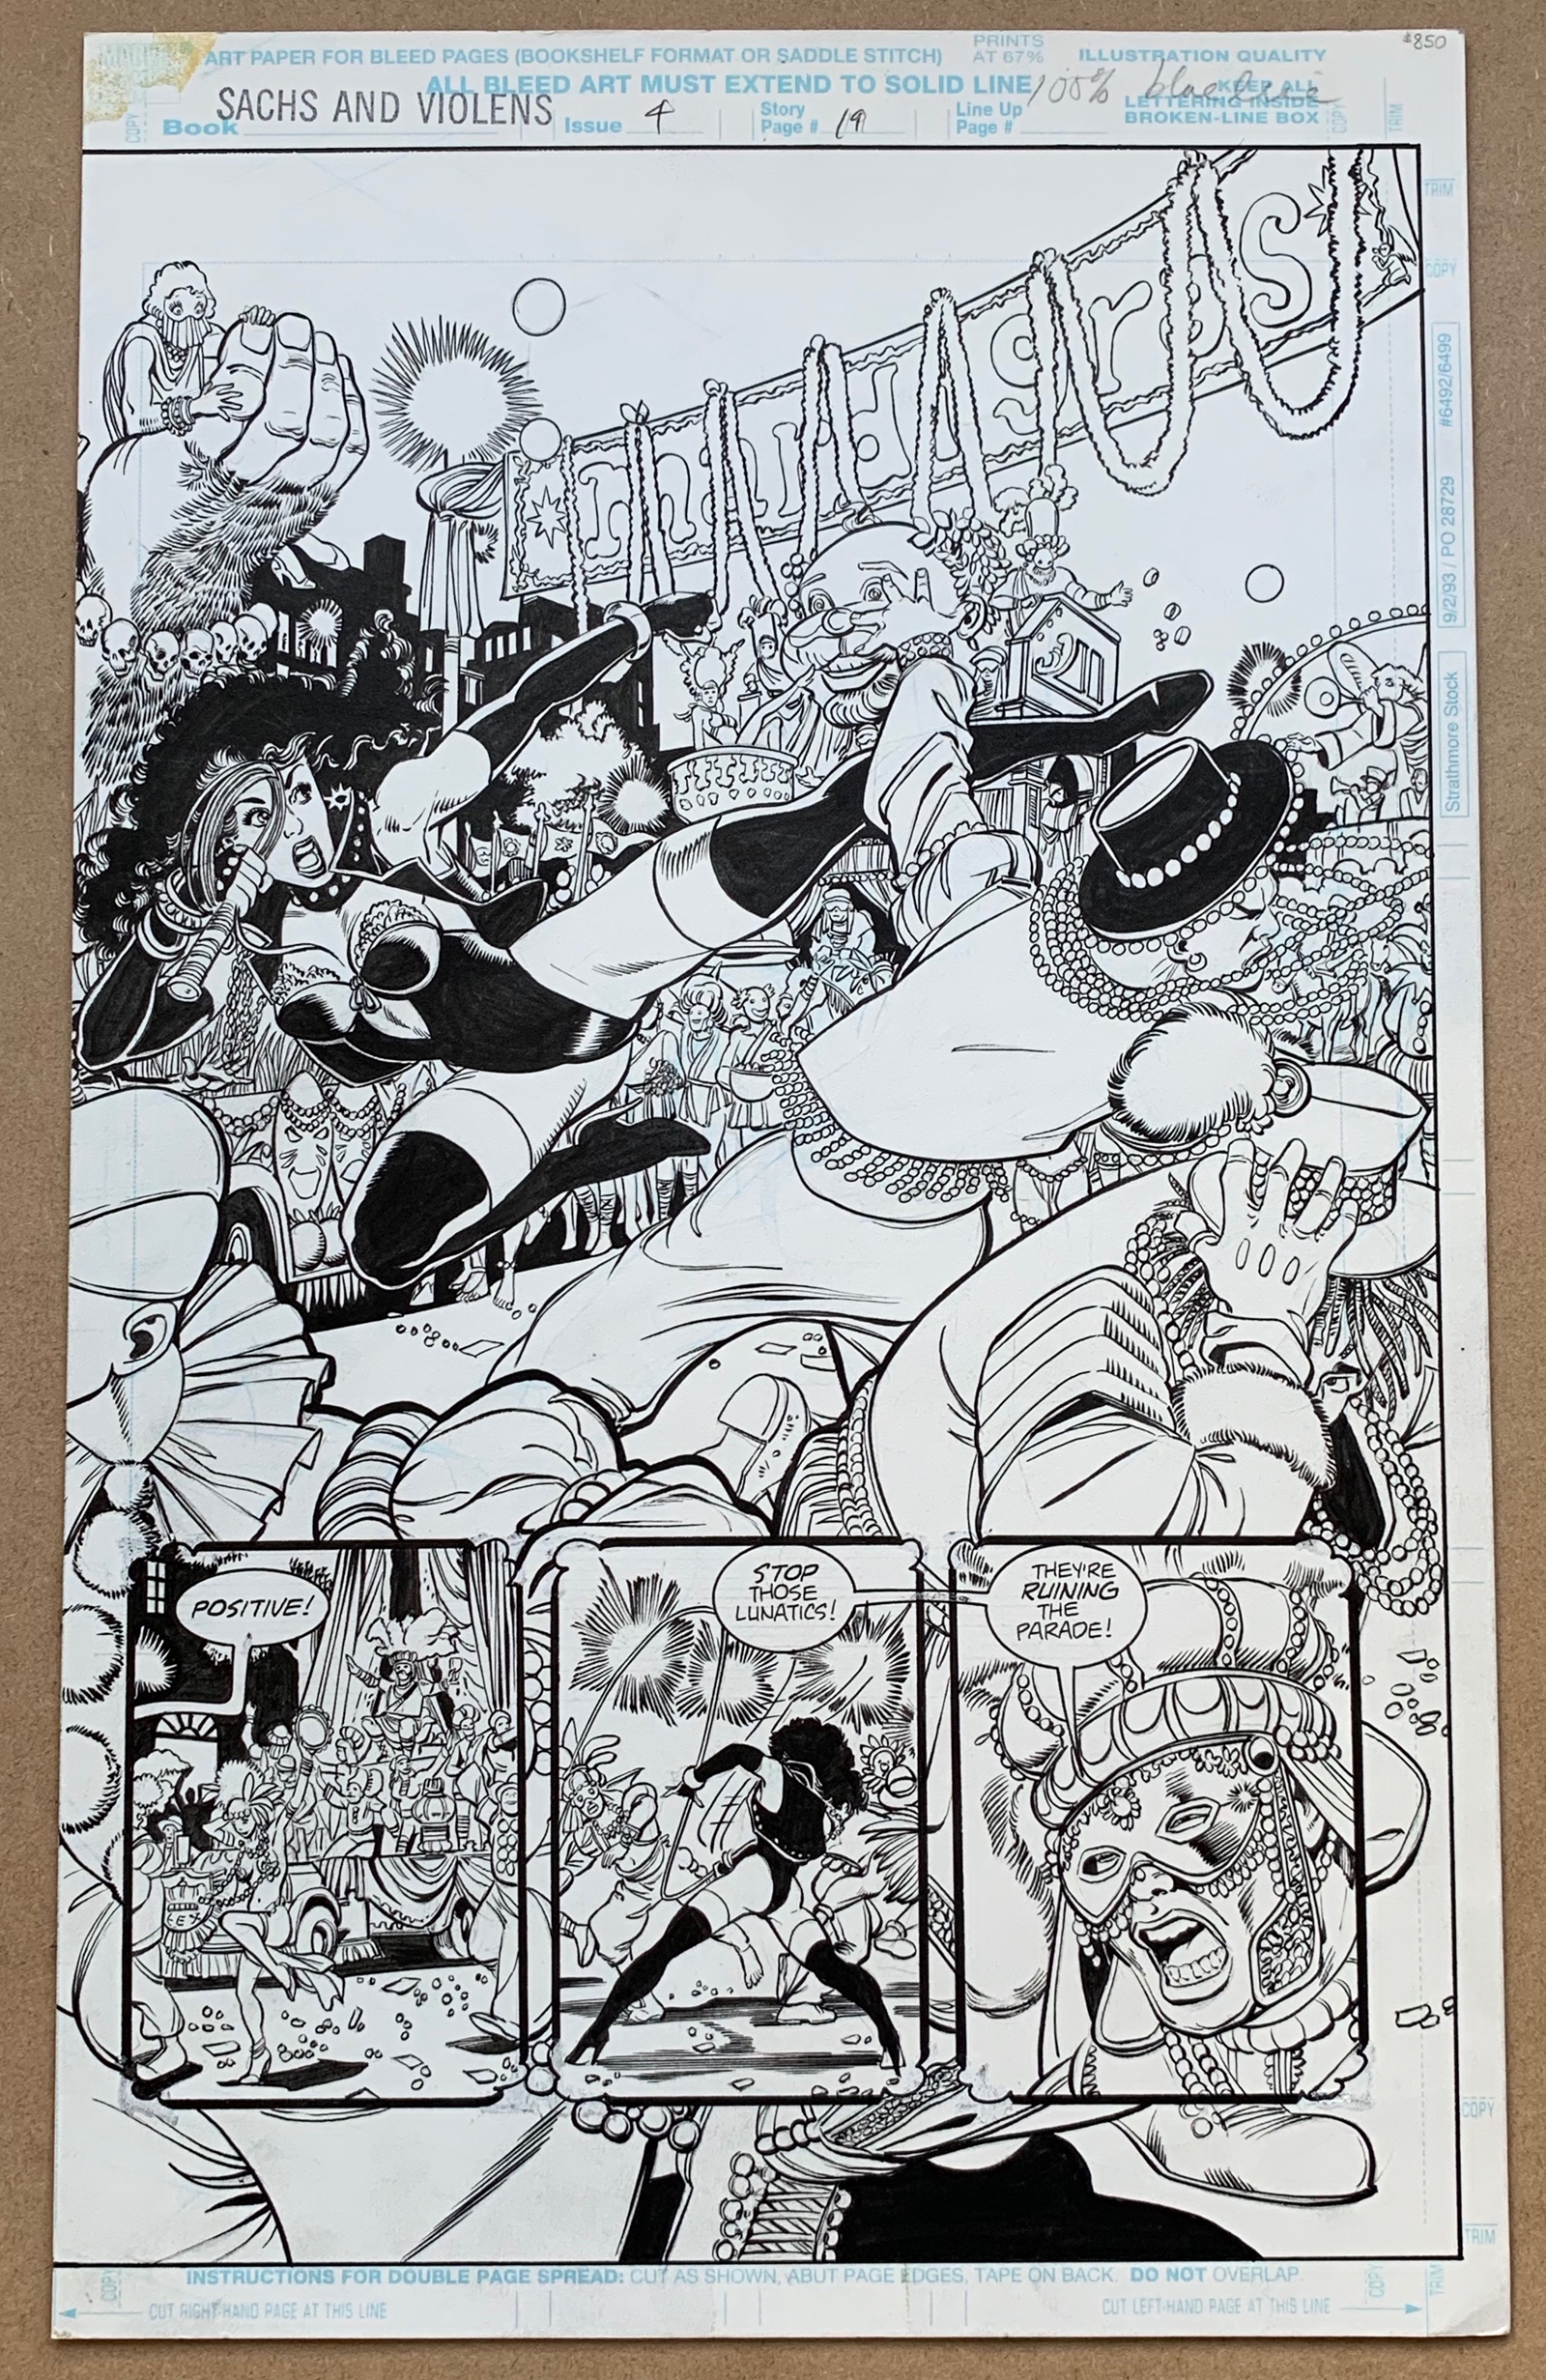 SACHS & VIOLENS #4 (1994) - ORIGINAL ARTWORK - GEORGE PEREZ (Artist) & ARNE STARR (Inker) - Pages 18 - Image 4 of 4